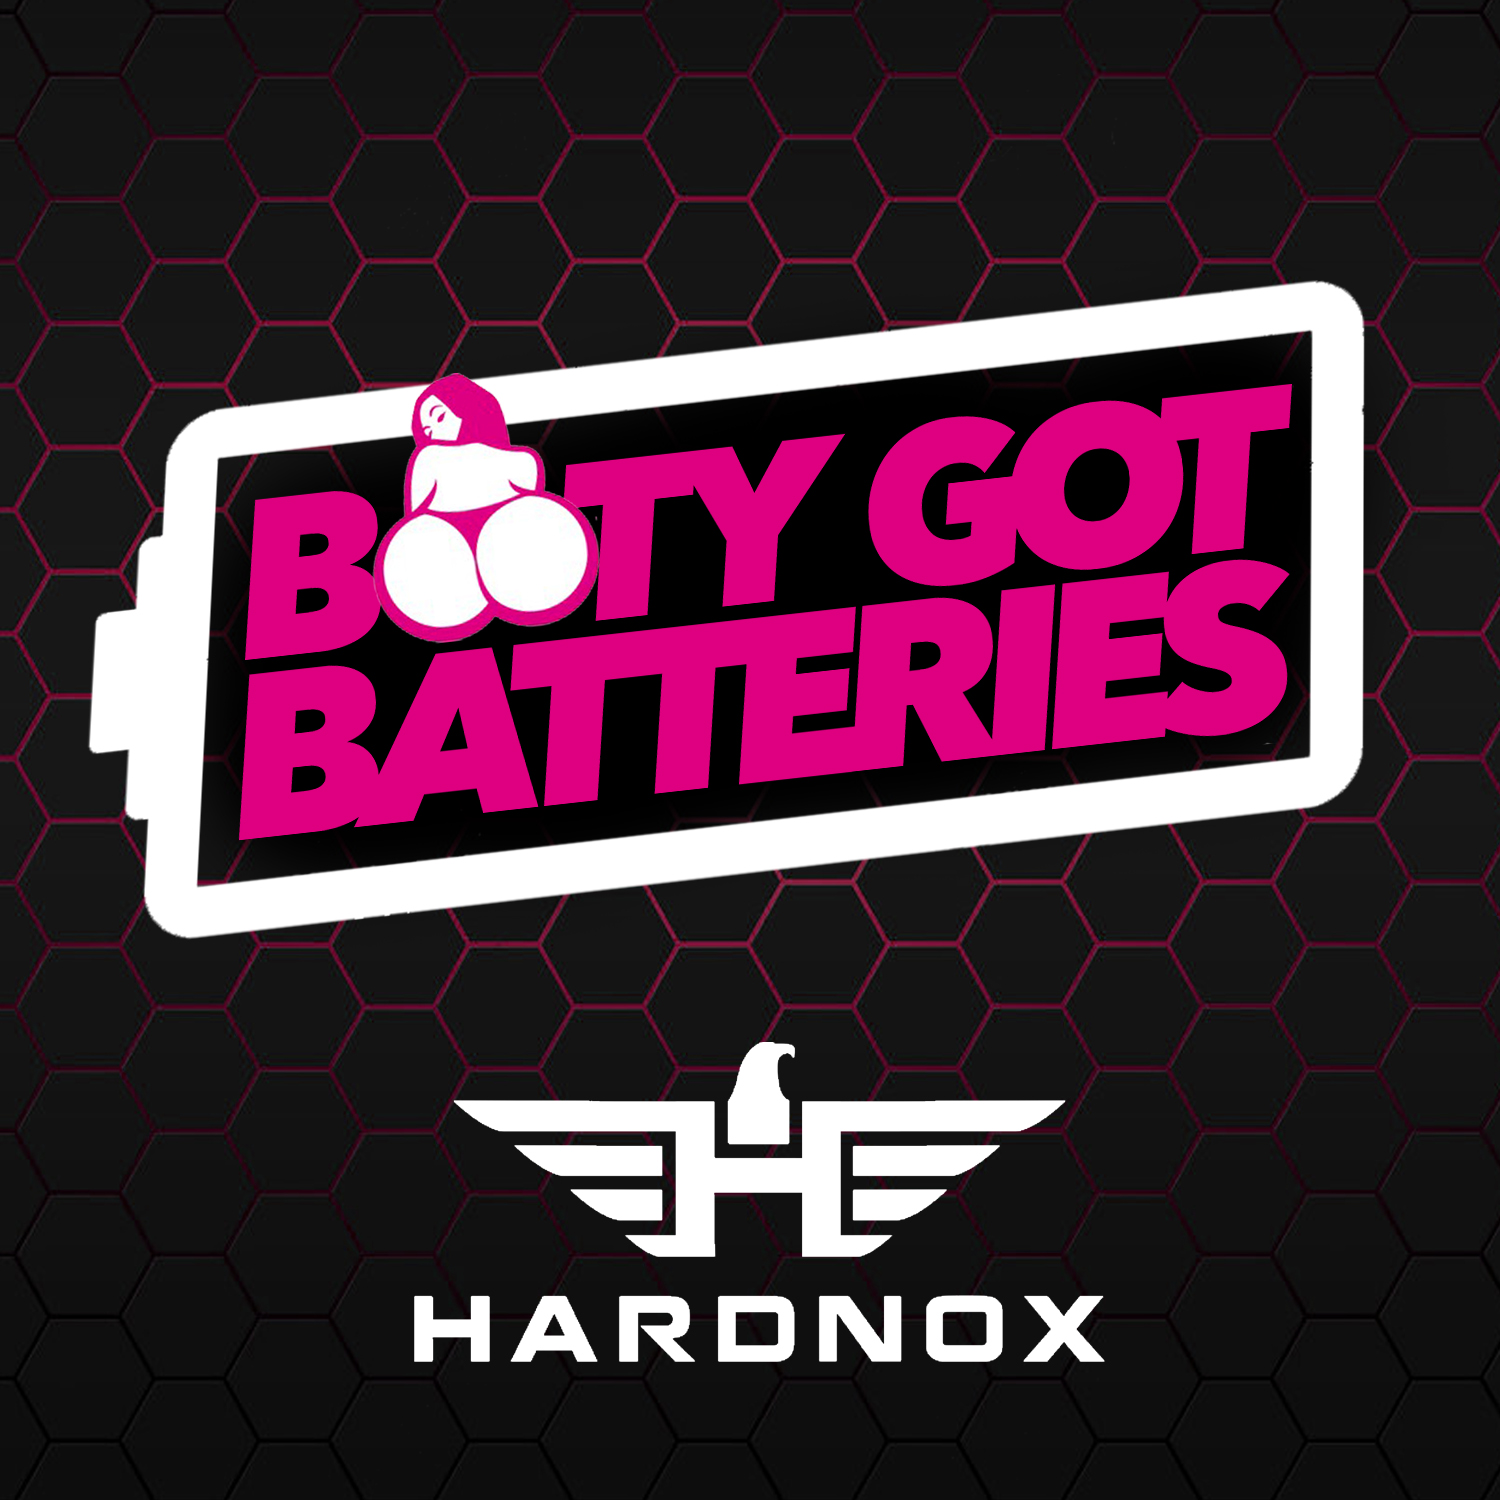 Booty Got Batteries